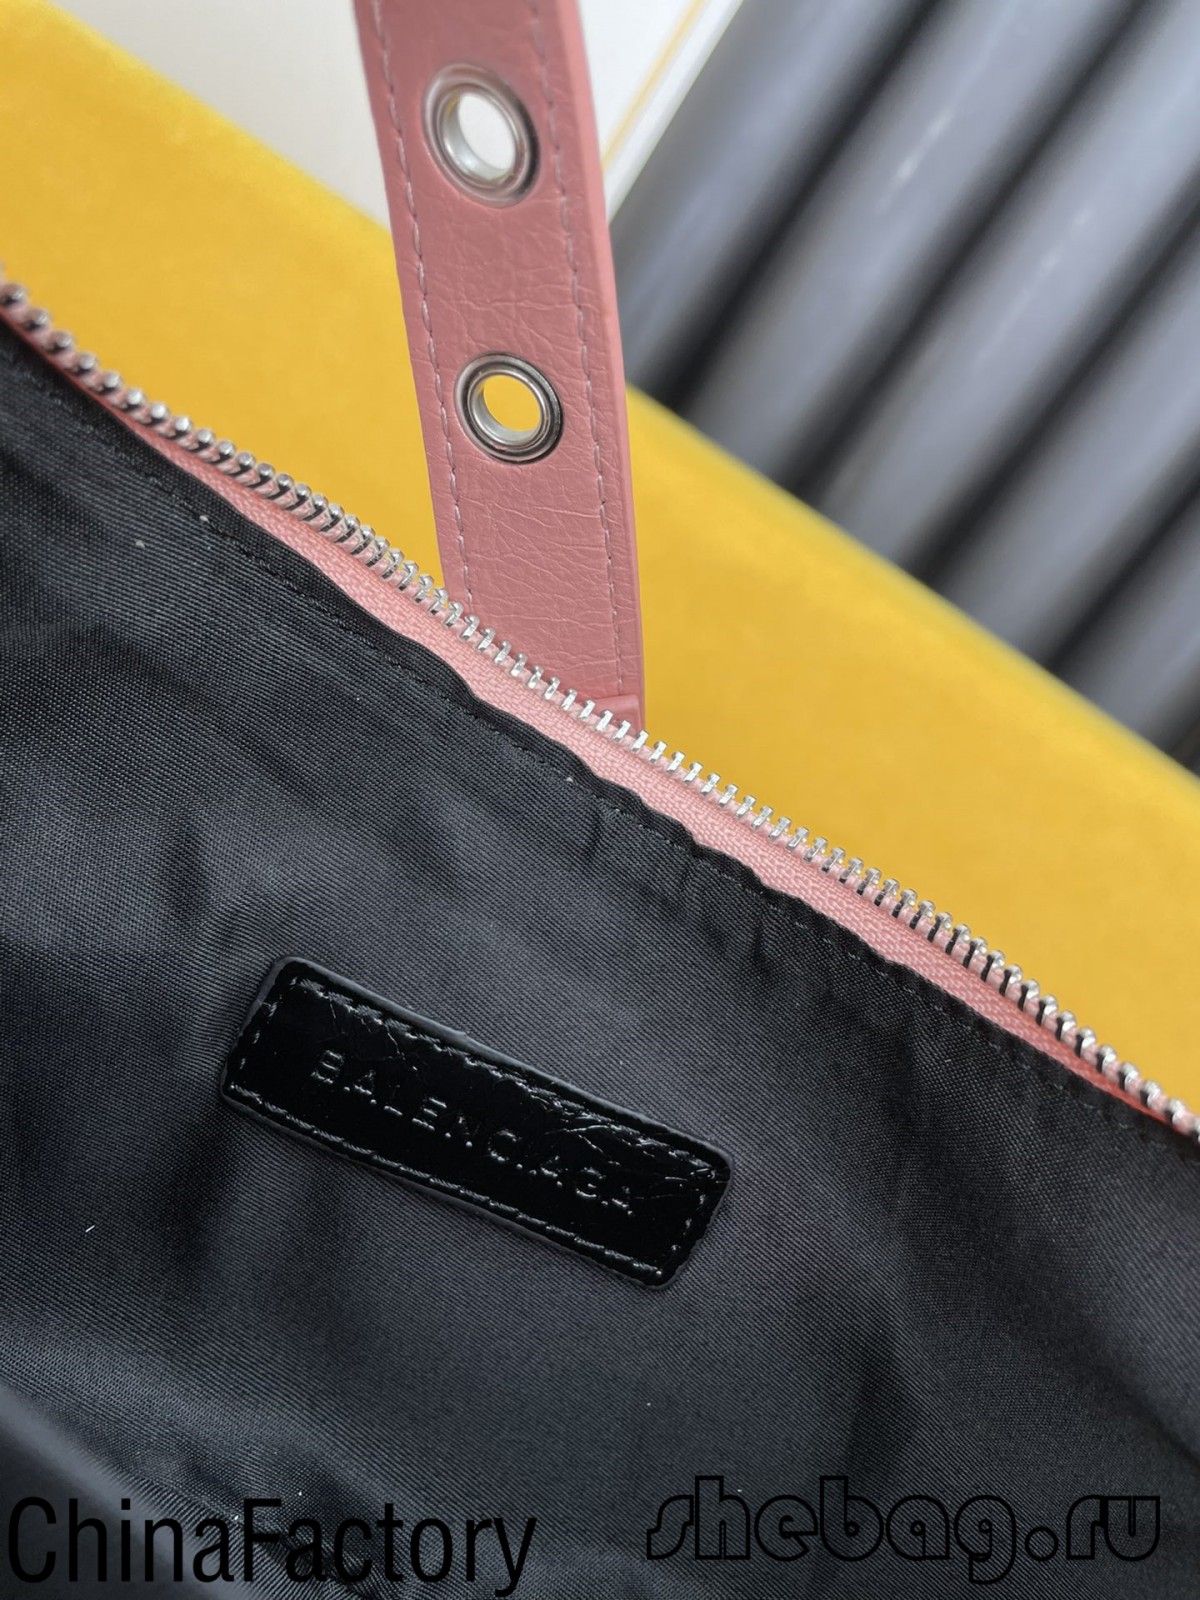 பலென்சியாகா தோள்பட்டை பை பிரதி: லு ககோல் (நவ. 2021)-Best Quality Fake Louis Vuitton Bag Online Store, Replica designer bag ru